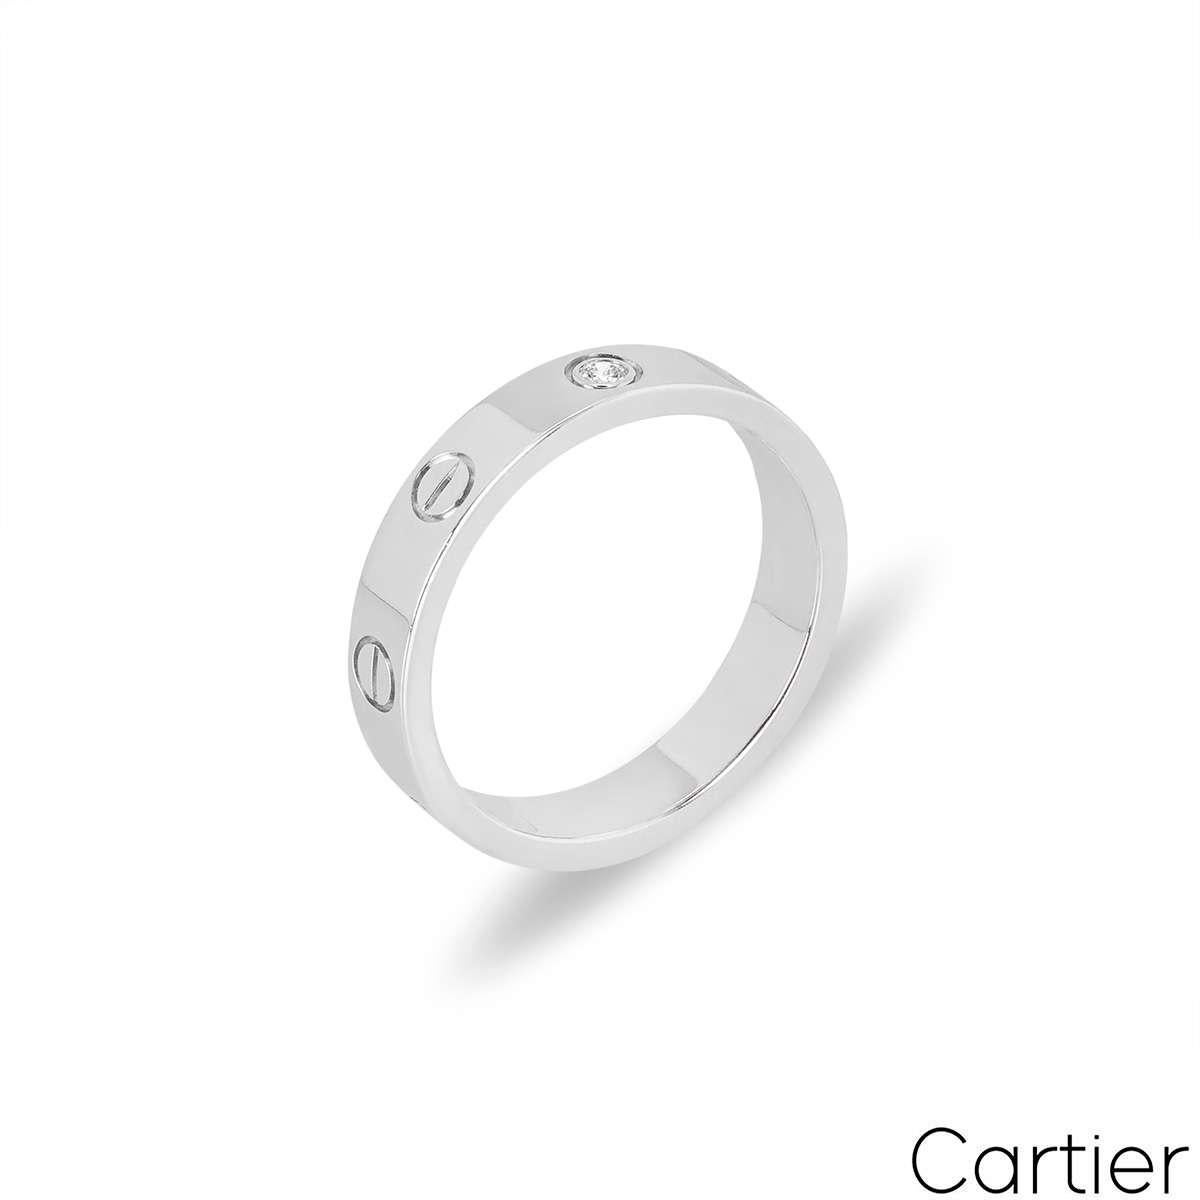 Ein Cartier-Diamant-Trauring aus Weißgold aus der Collection'S Love. Der Ring besteht aus den ikonischen Cartier-Schrauben und einem einzelnen runden Diamanten im Brillantschliff in der Mitte, der insgesamt 0,02 ct. beträgt. Mit einer Breite von 4